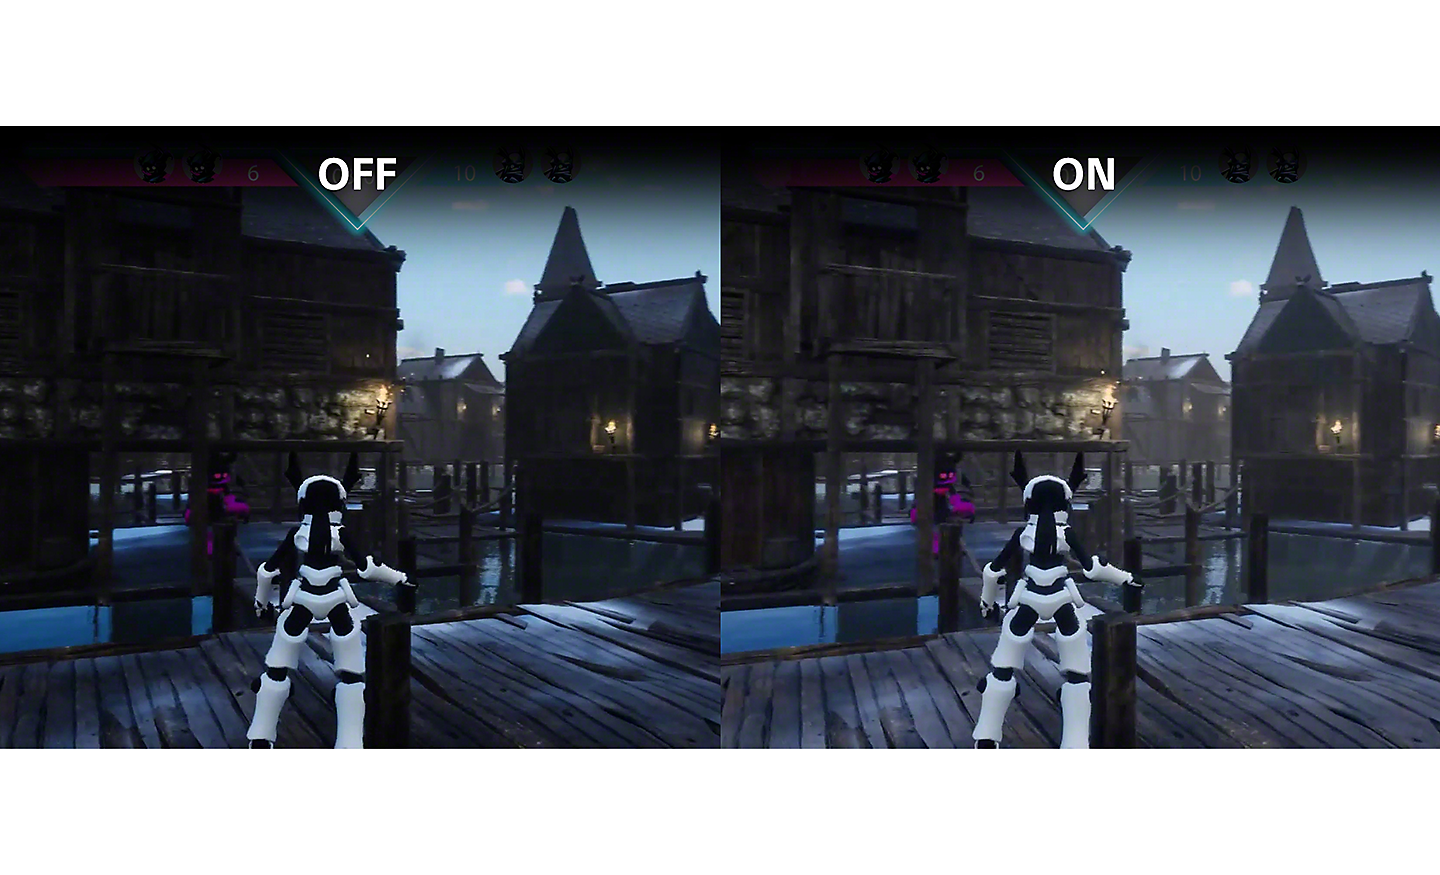 遊戲螢幕截圖的雙視圖，左方影像較暗並標記「關閉」，右方影像較亮並標記「開啟」